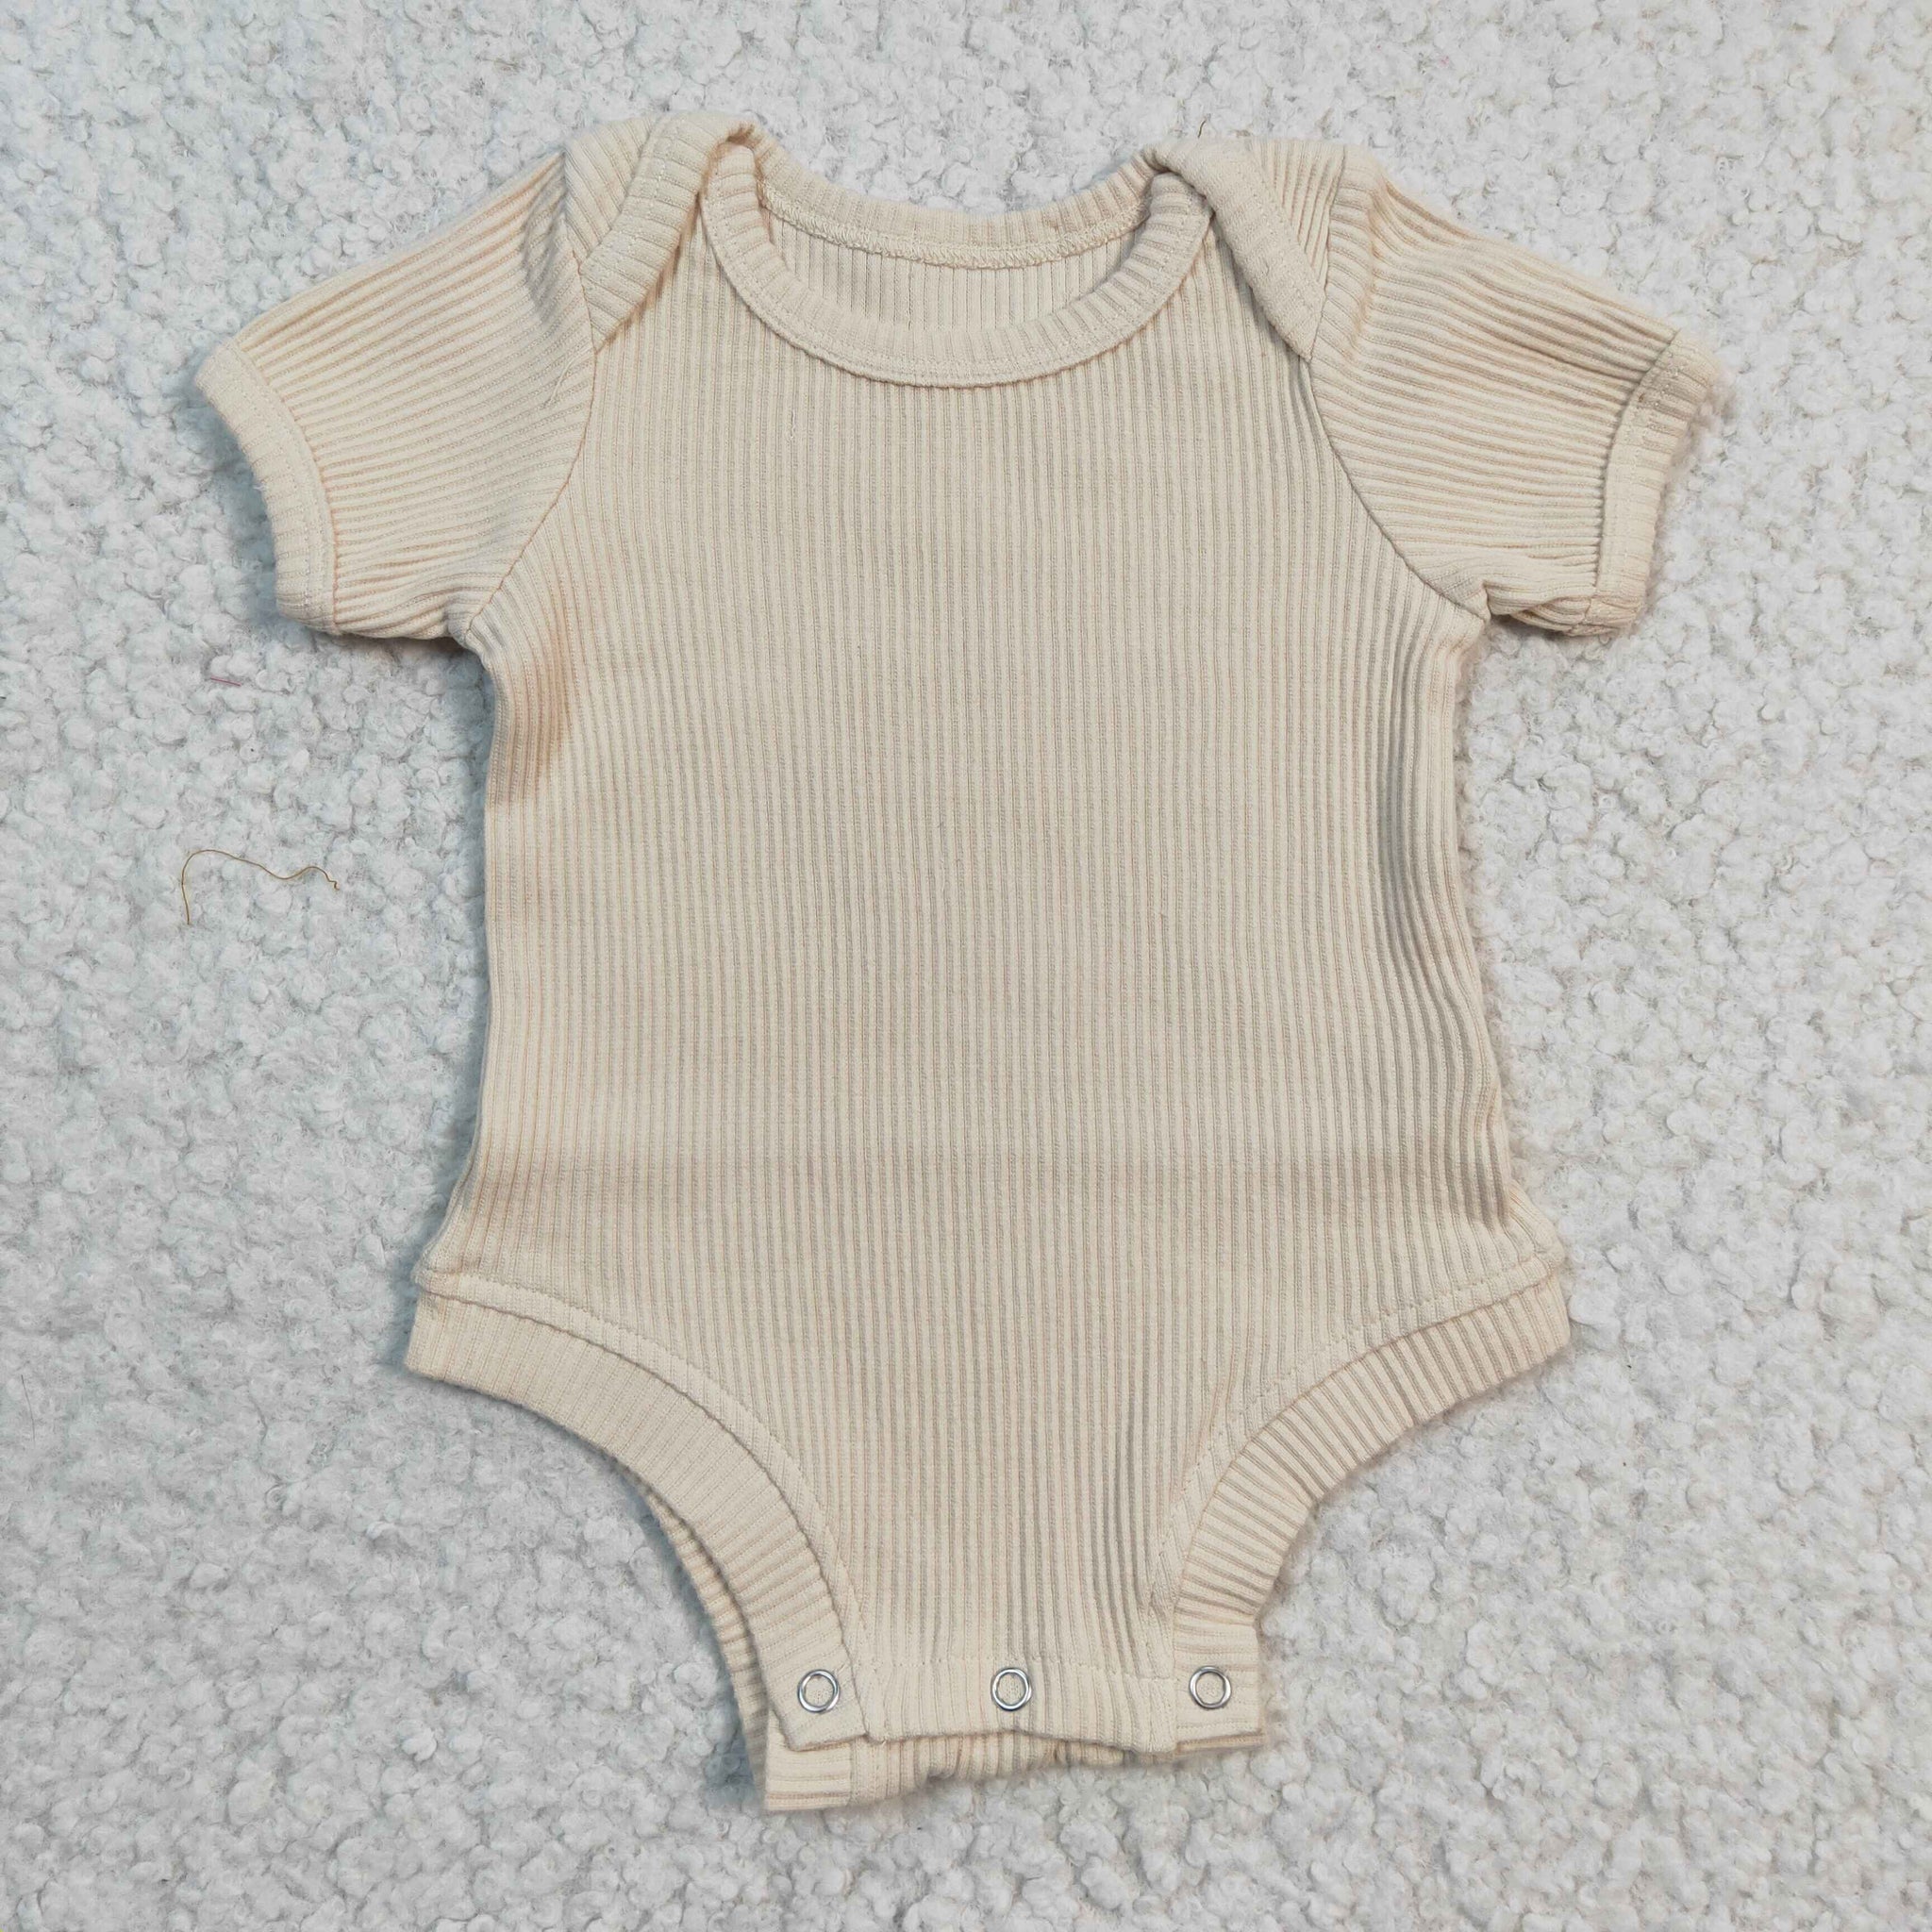 SR0208 baby clothes cotton bubble